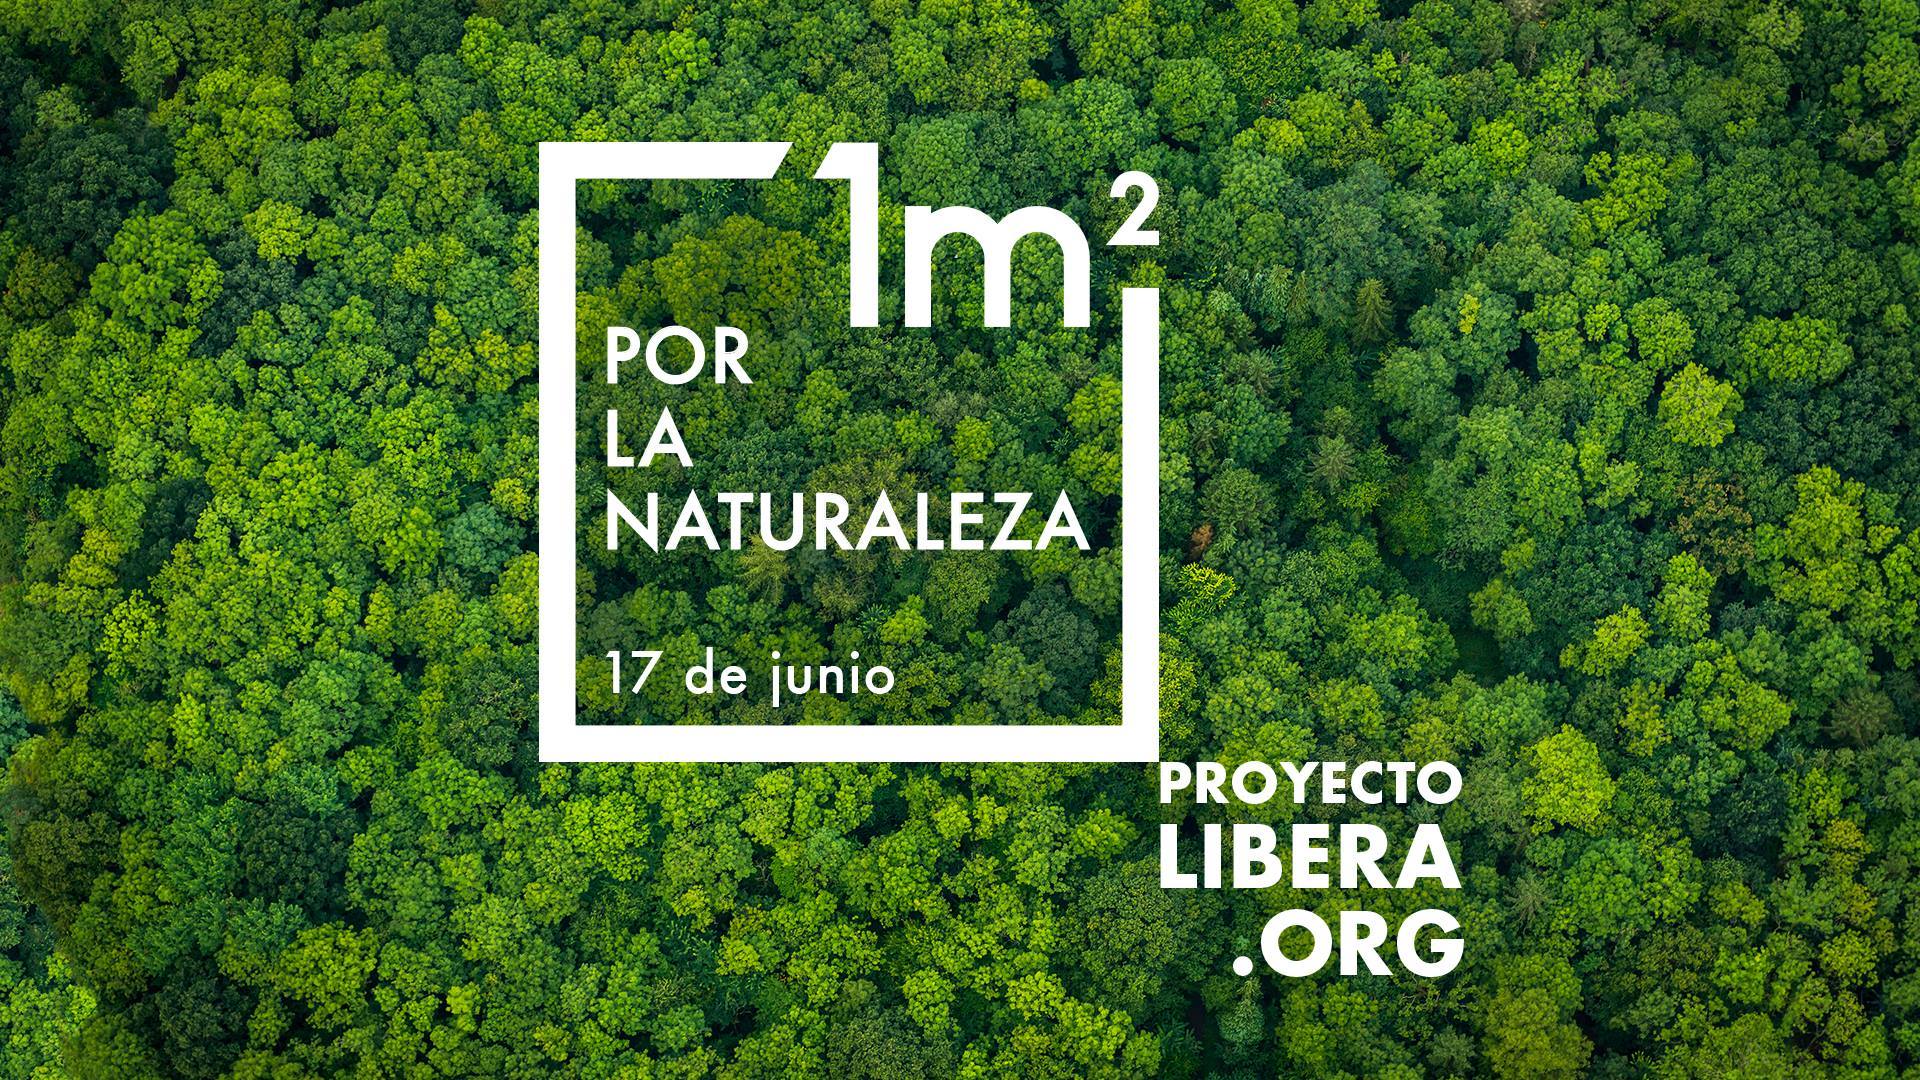 1m2 por Naturaleza, con Región de Murcia Limpia